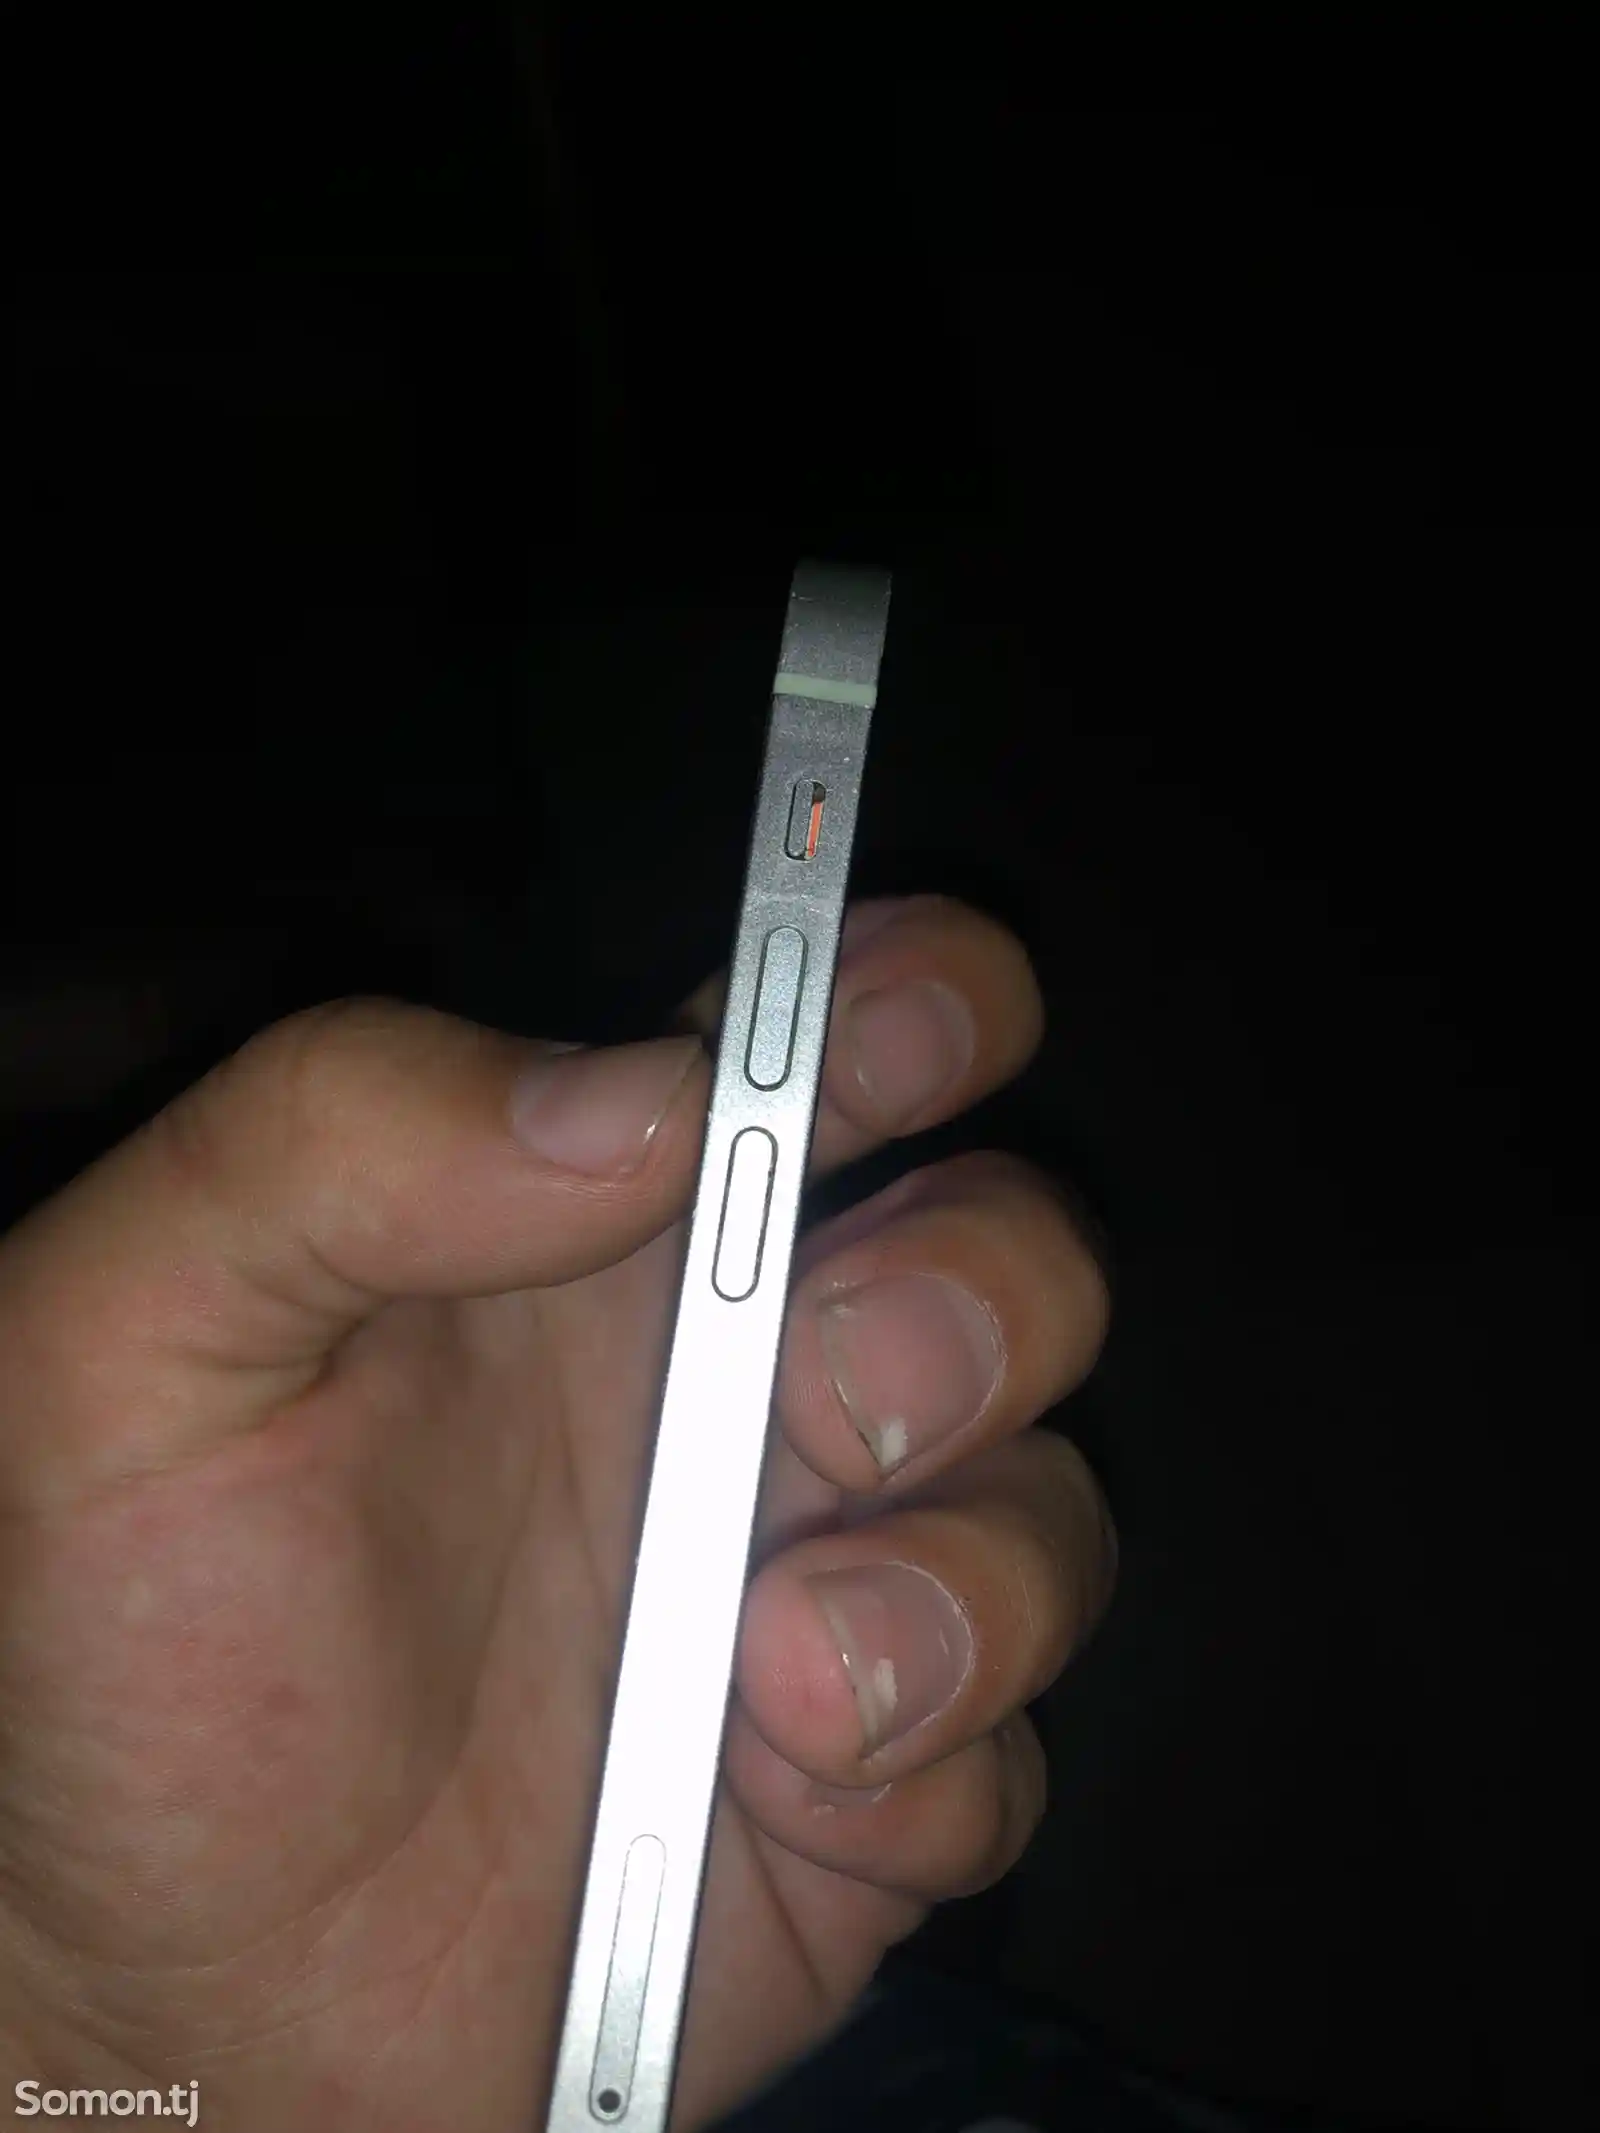 Apple iPhone 12 mini, 64 gb, Green-3